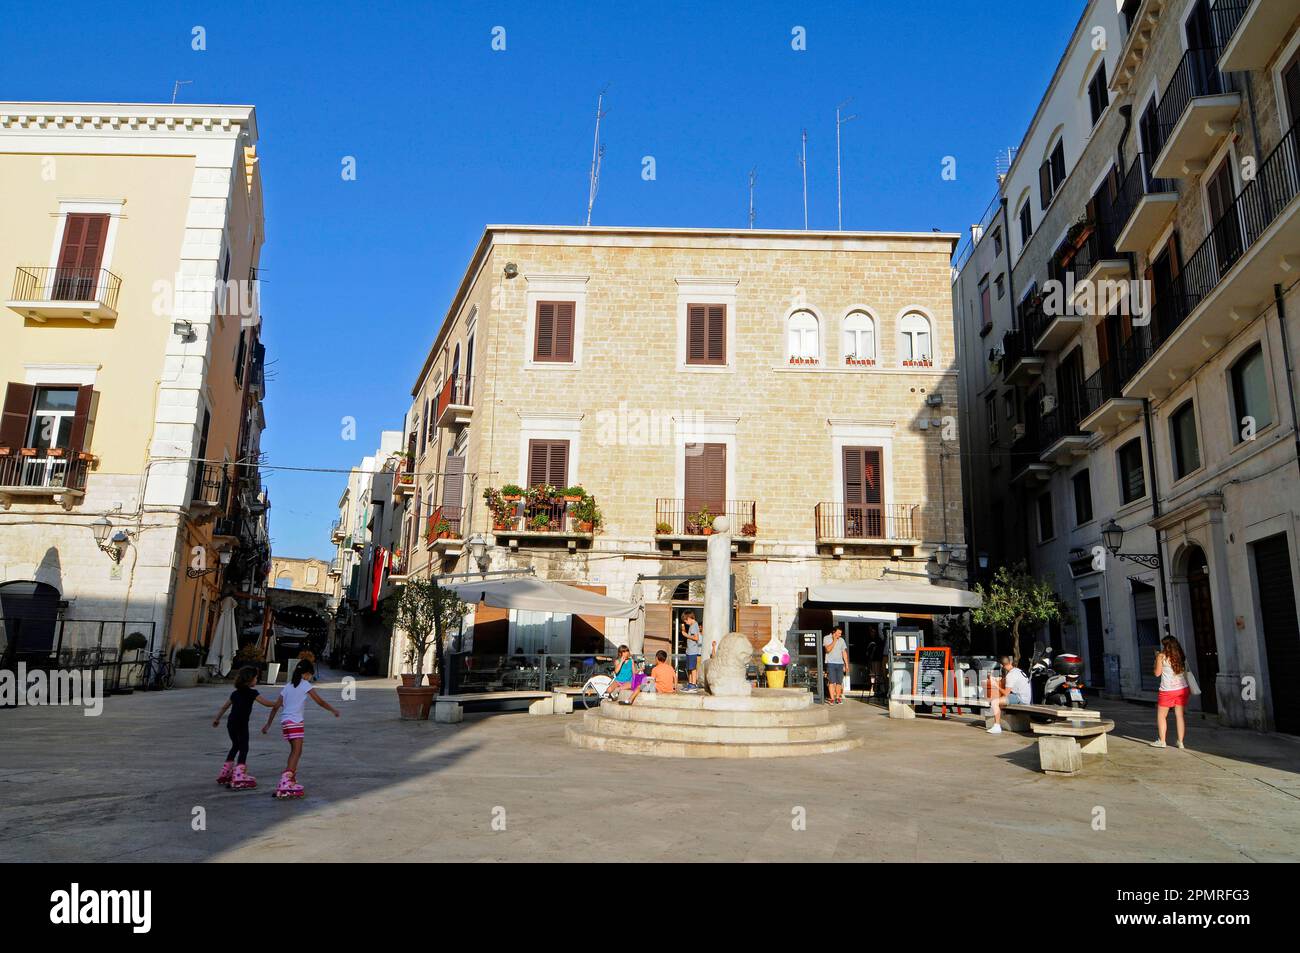 Piazza Mercantile, Square, Bari Vecchia, historical city, Bari, Puglia, Italy Stock Photo